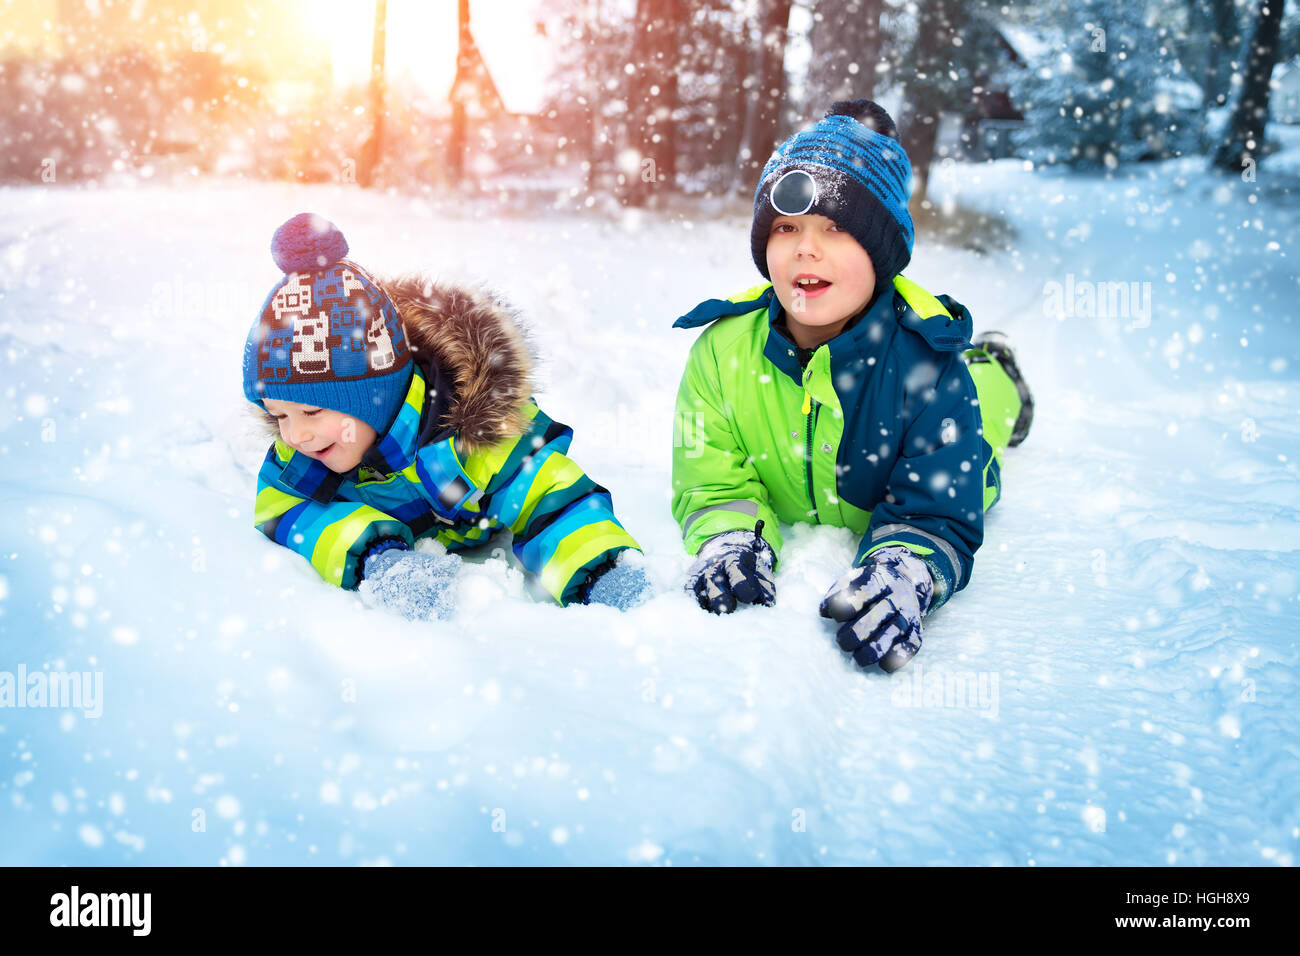 Kinder spielen im Schnee bei Schneefall Stockfoto